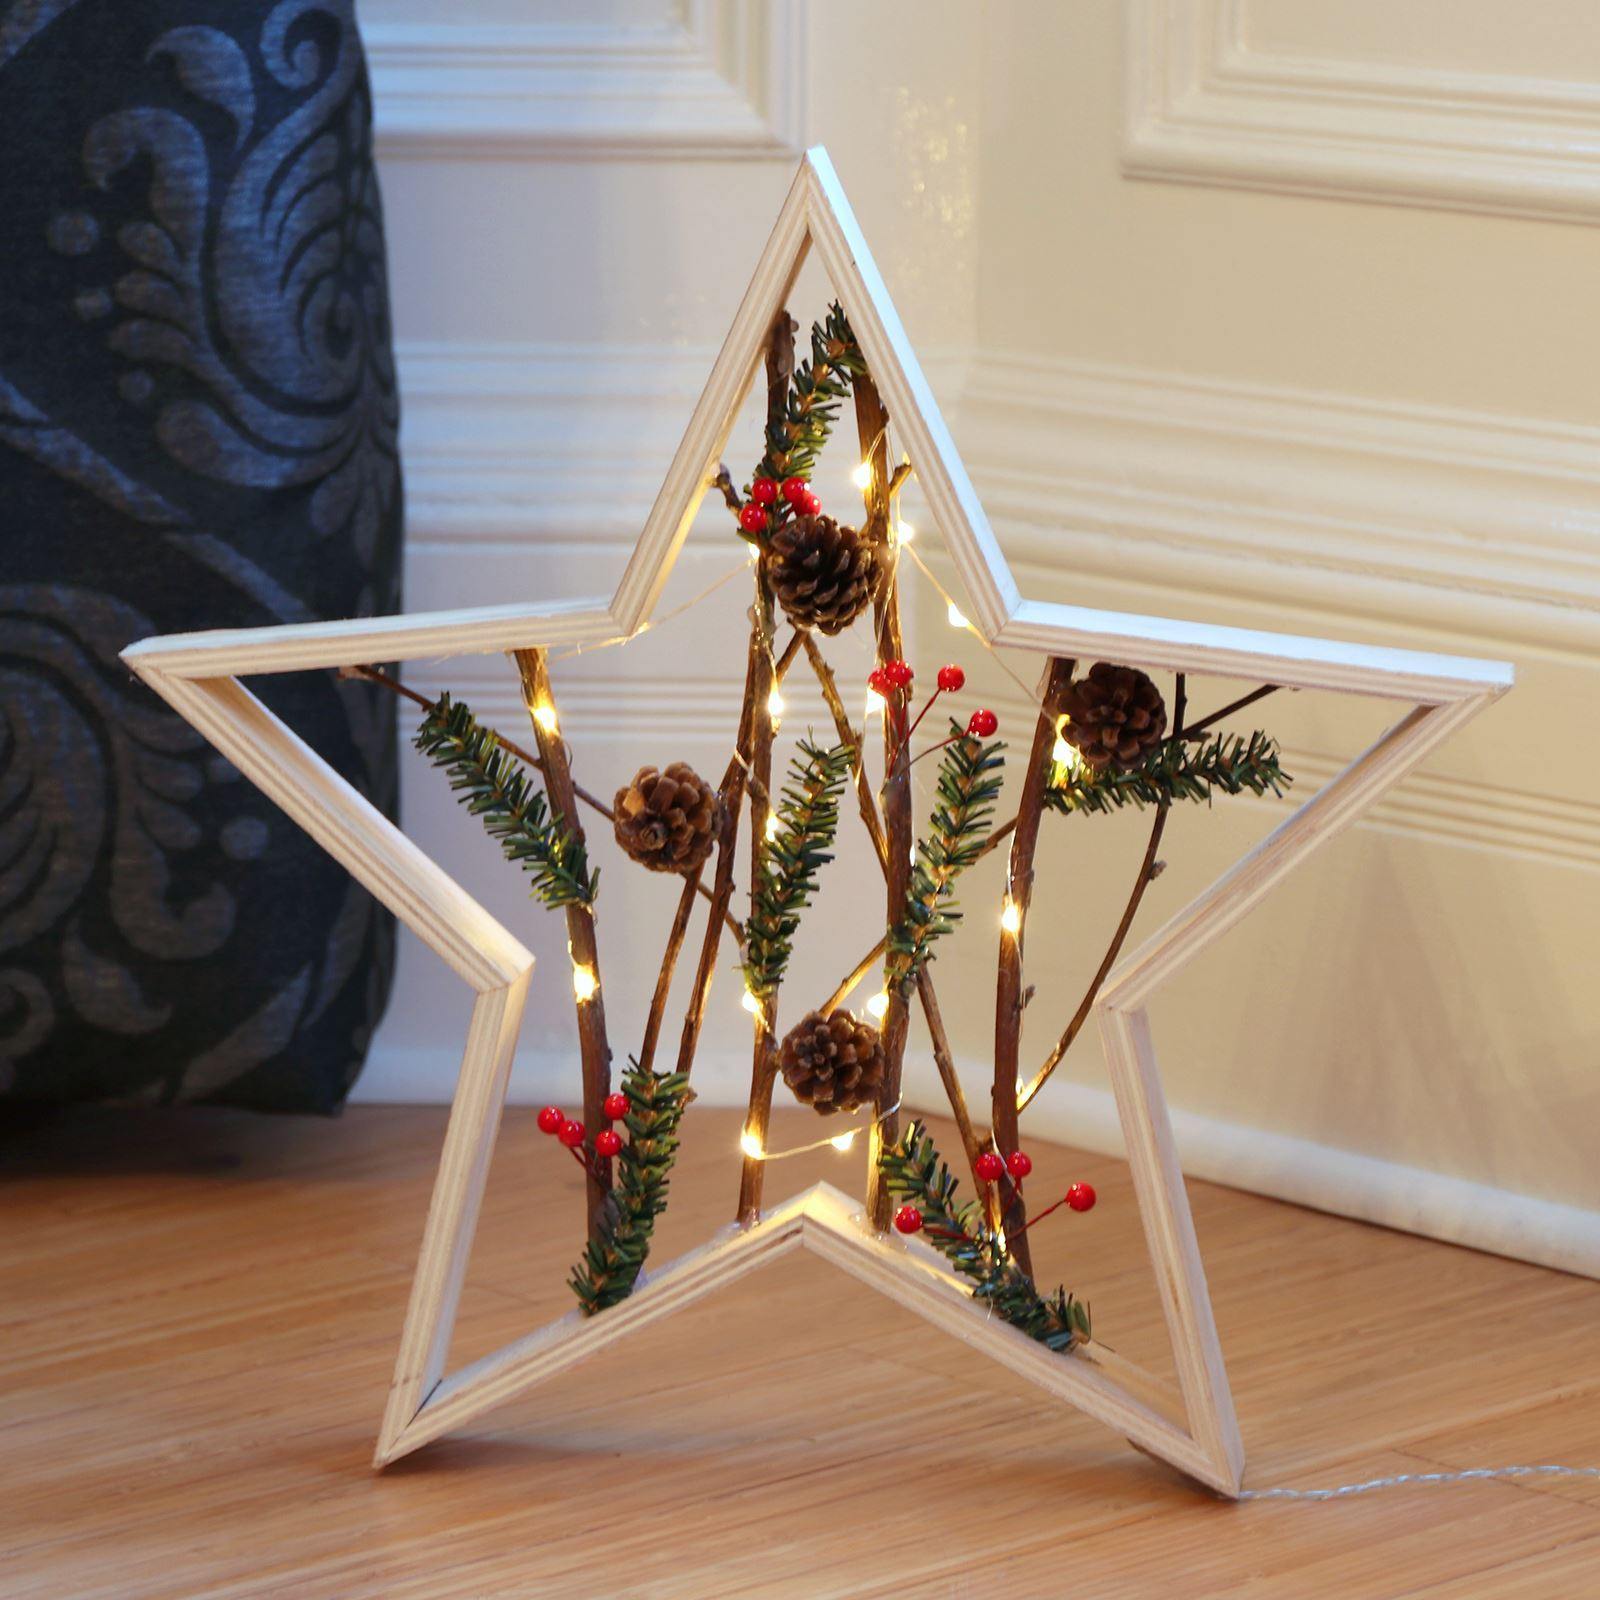 Mr Crimbo 15" Light Up Christmas Star Wood Decoration Berry - MrCrimbo.co.uk -XS5068 - -decorations